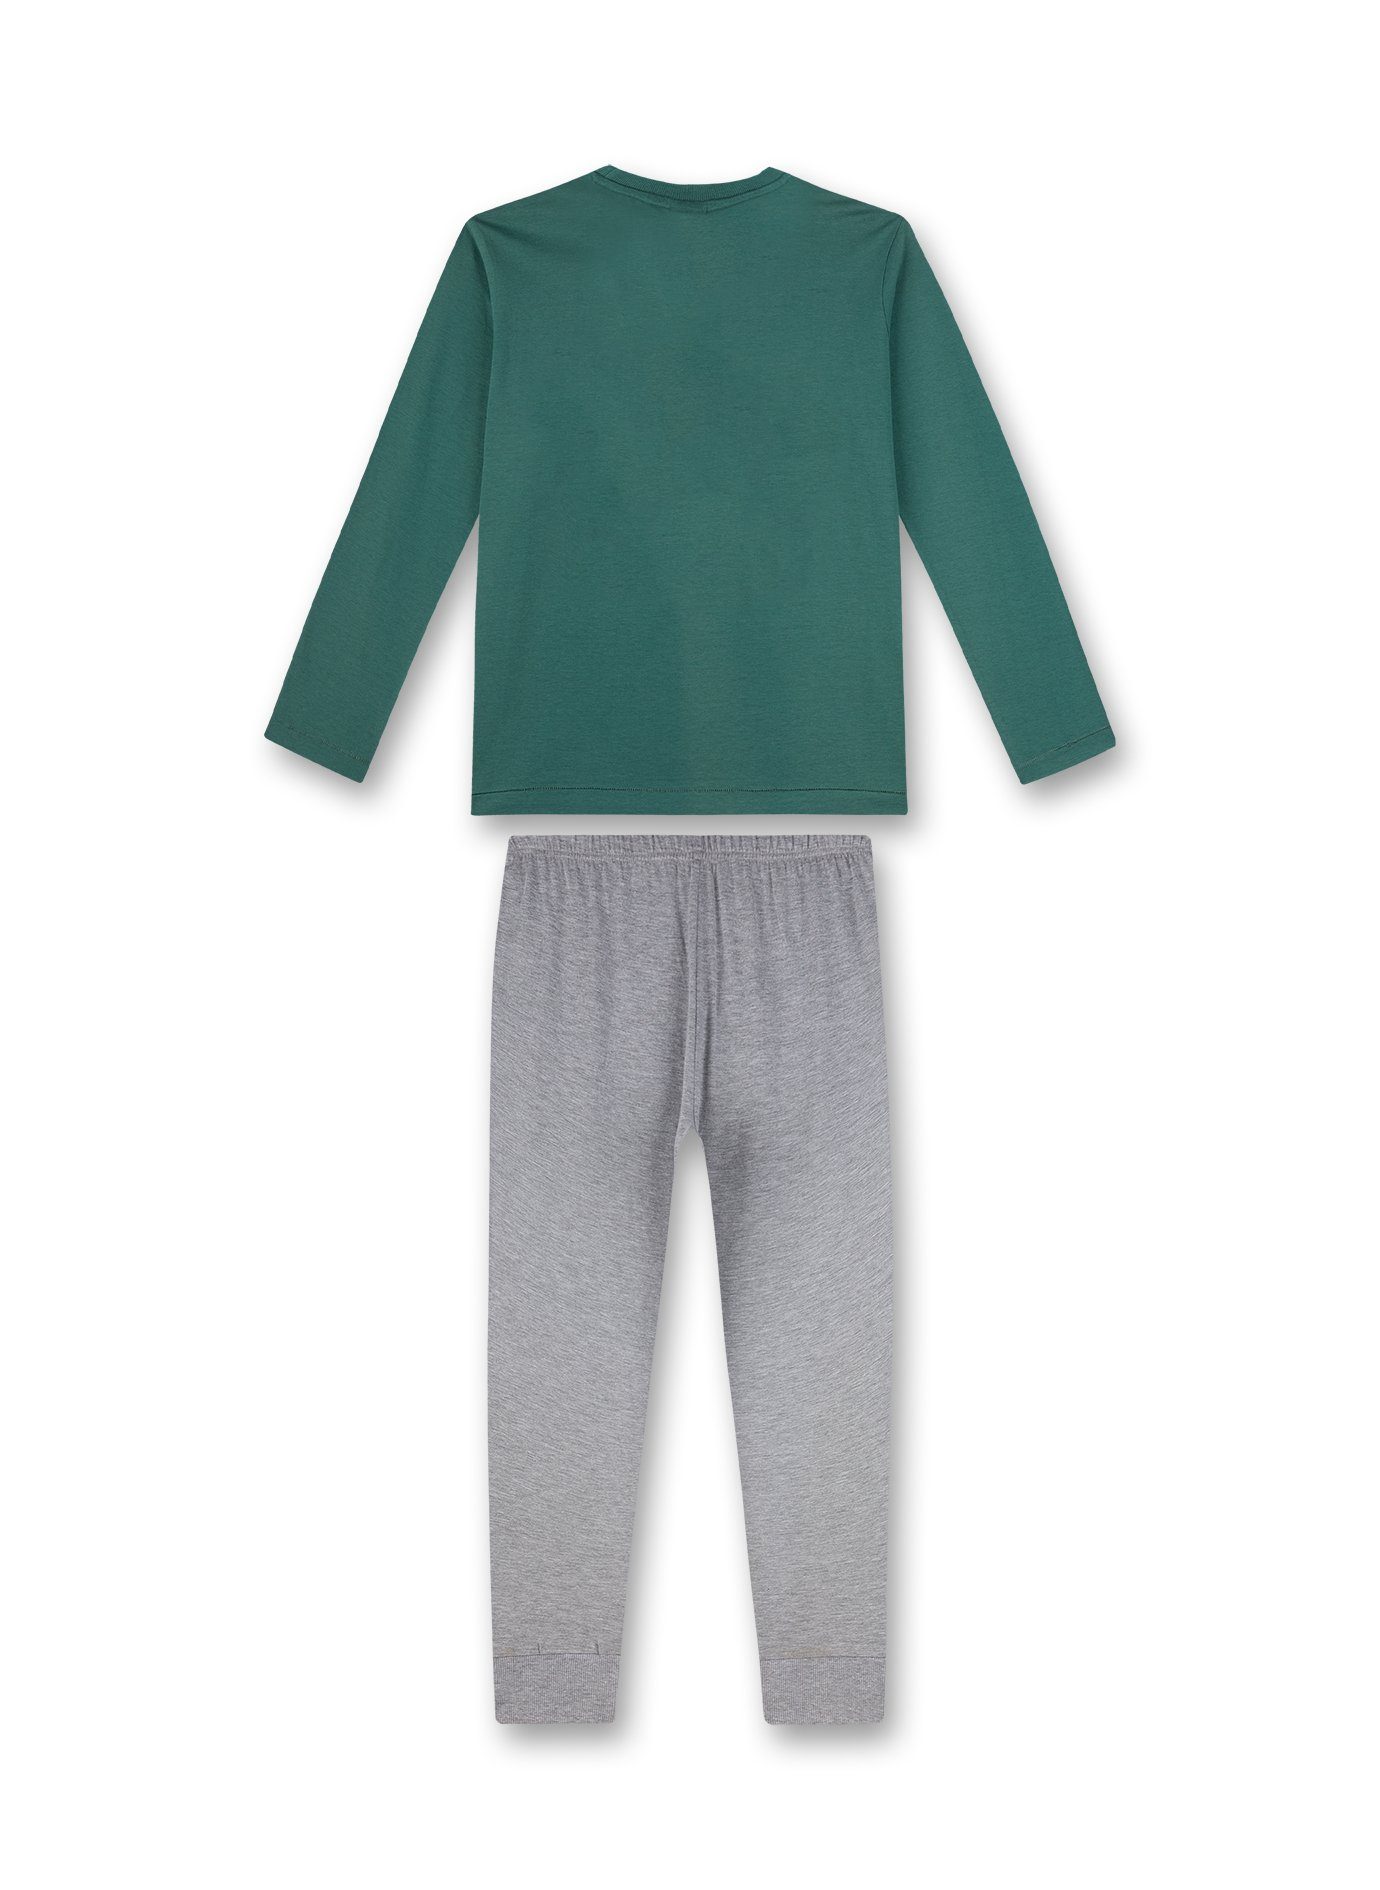 Outer Schlafanzug grau s.Oliver Pyjama lang (2 Jungen Pyjama Junior s.Oliver Space tlg) grün